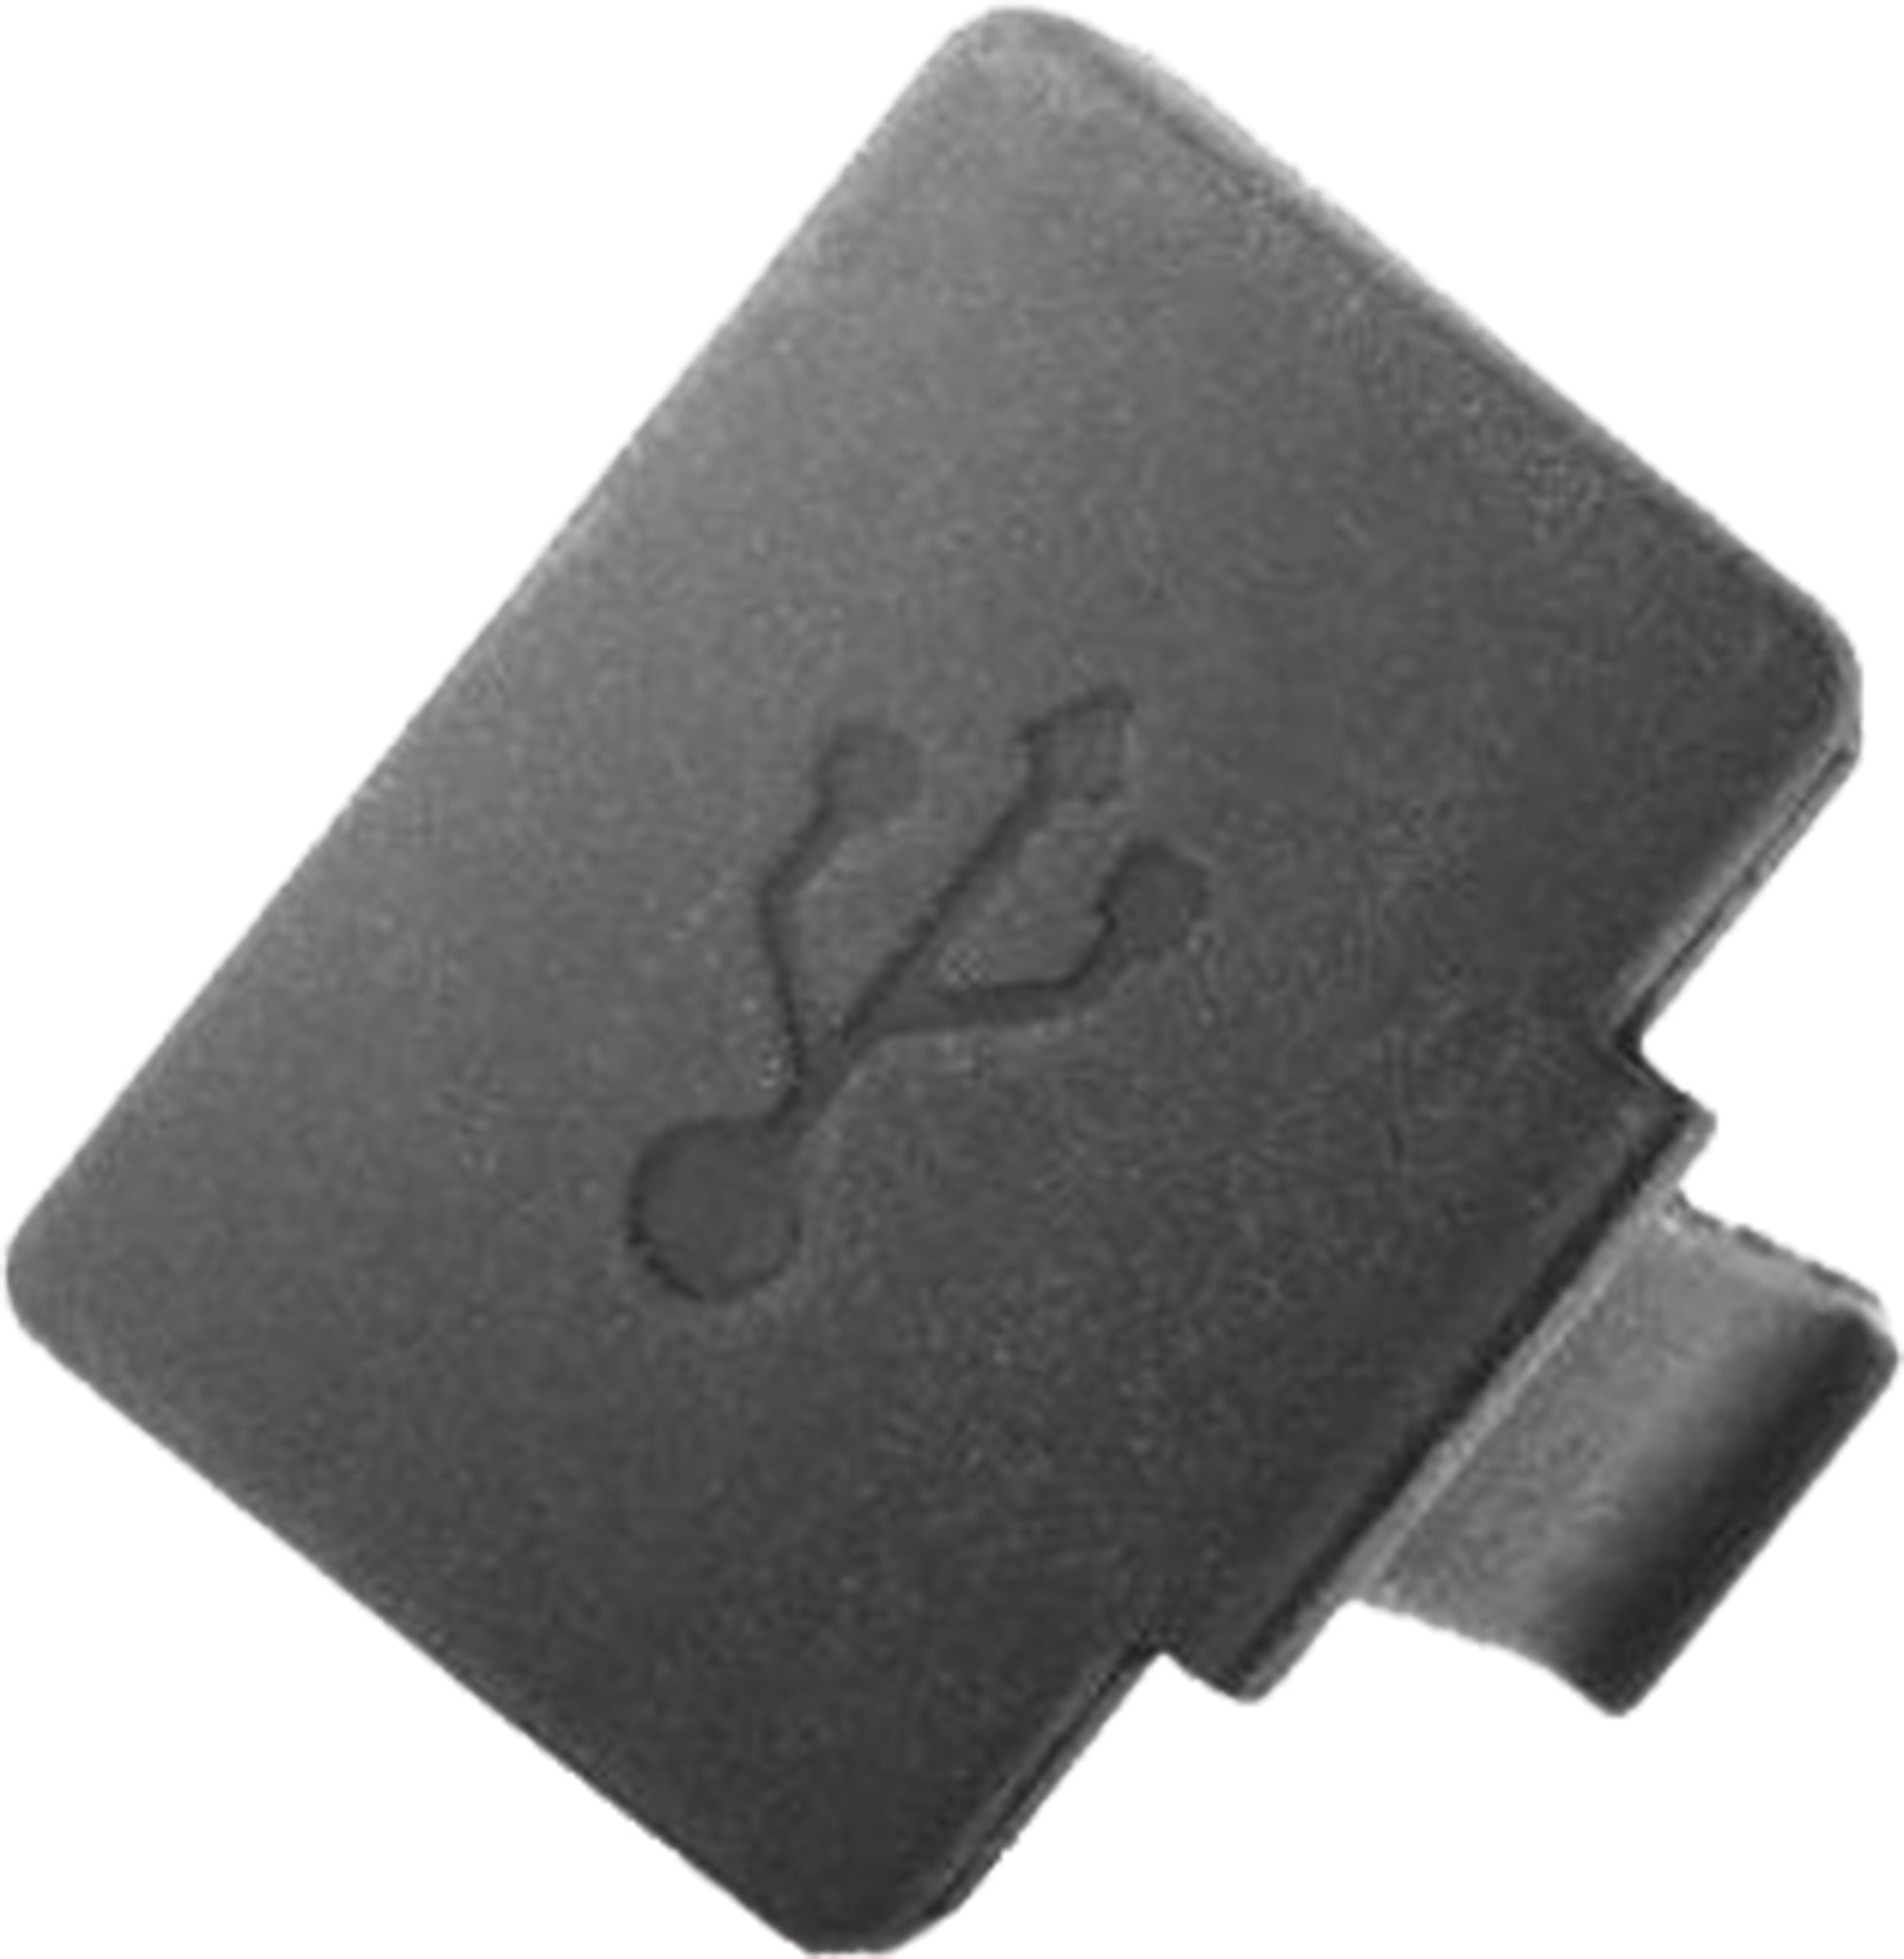 Kiox USB Cap